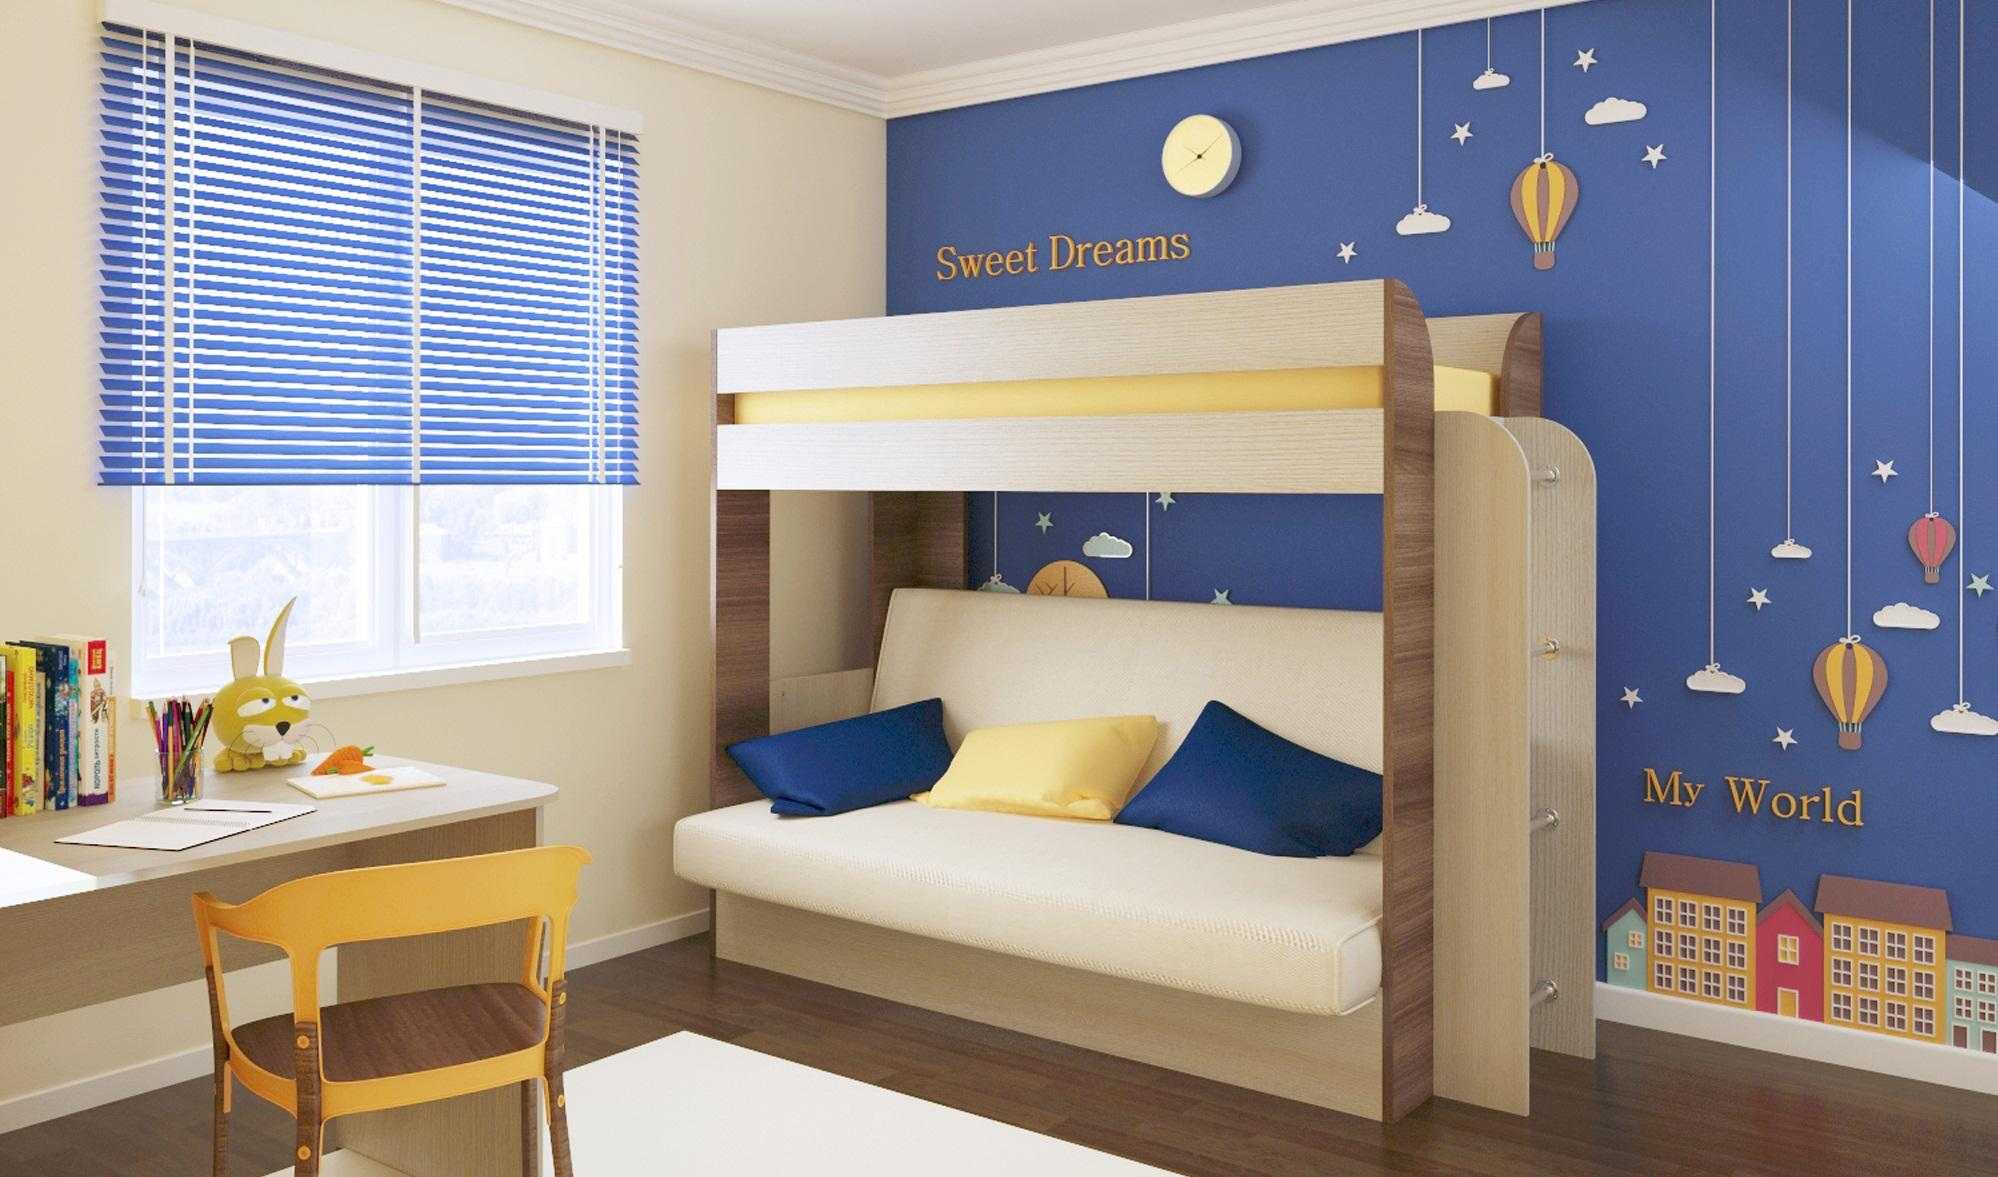 Продуманный дизайн и декорирование детской комнаты на два ребенка